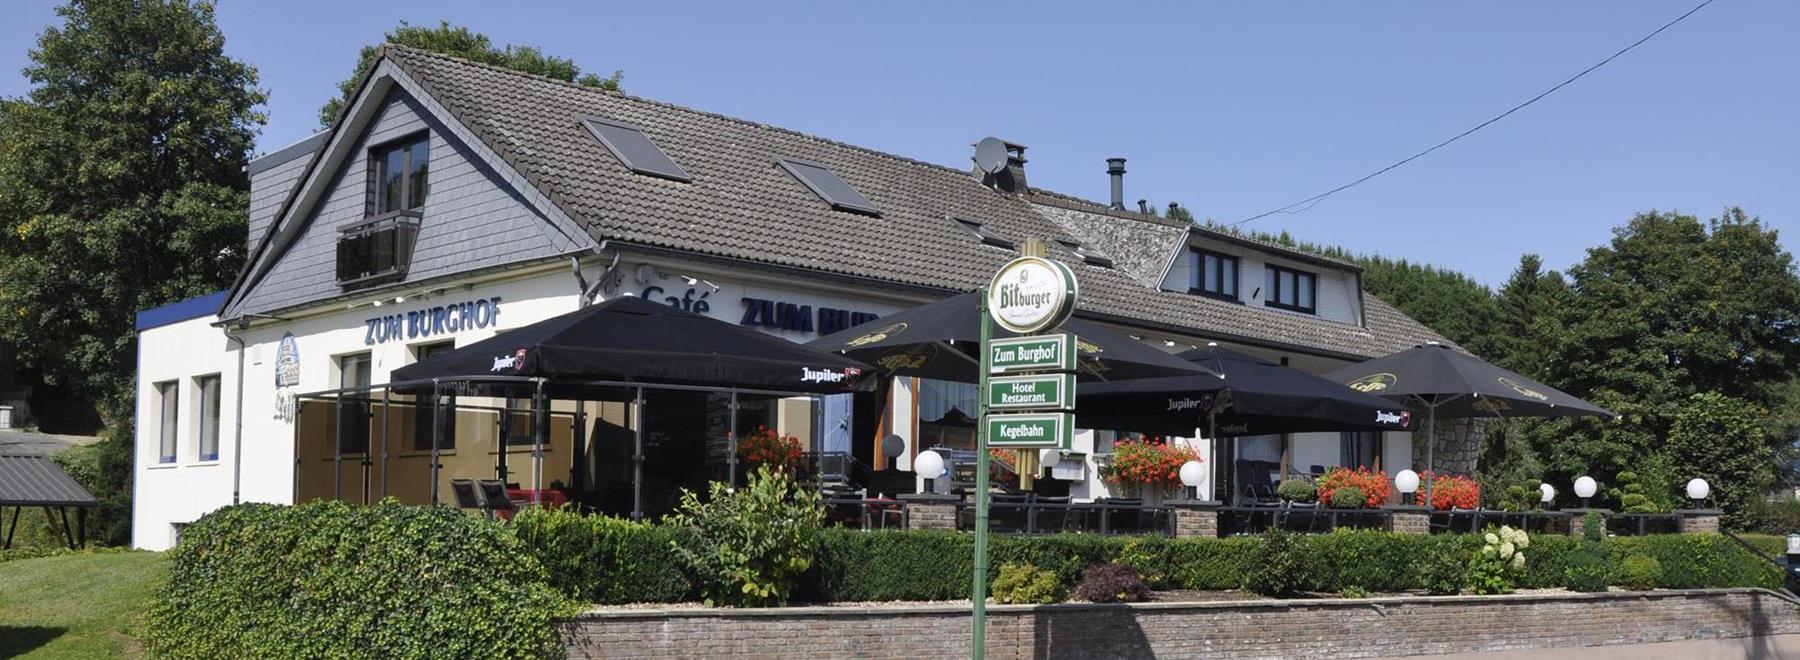 Willkommen im Hotel – Restaurant „Zum Burghof“ in Schönberg